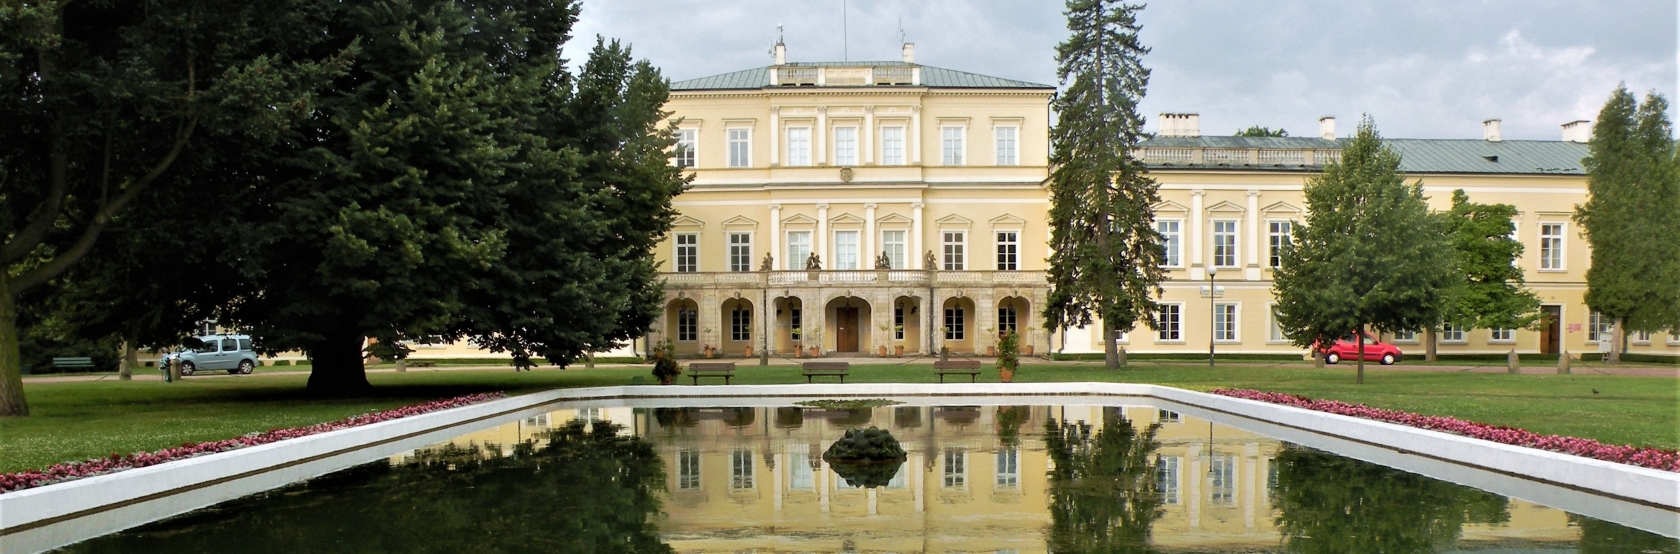  POMNIKI ARCHITEKTURY - pałac Czartoryskich w Puławach.  